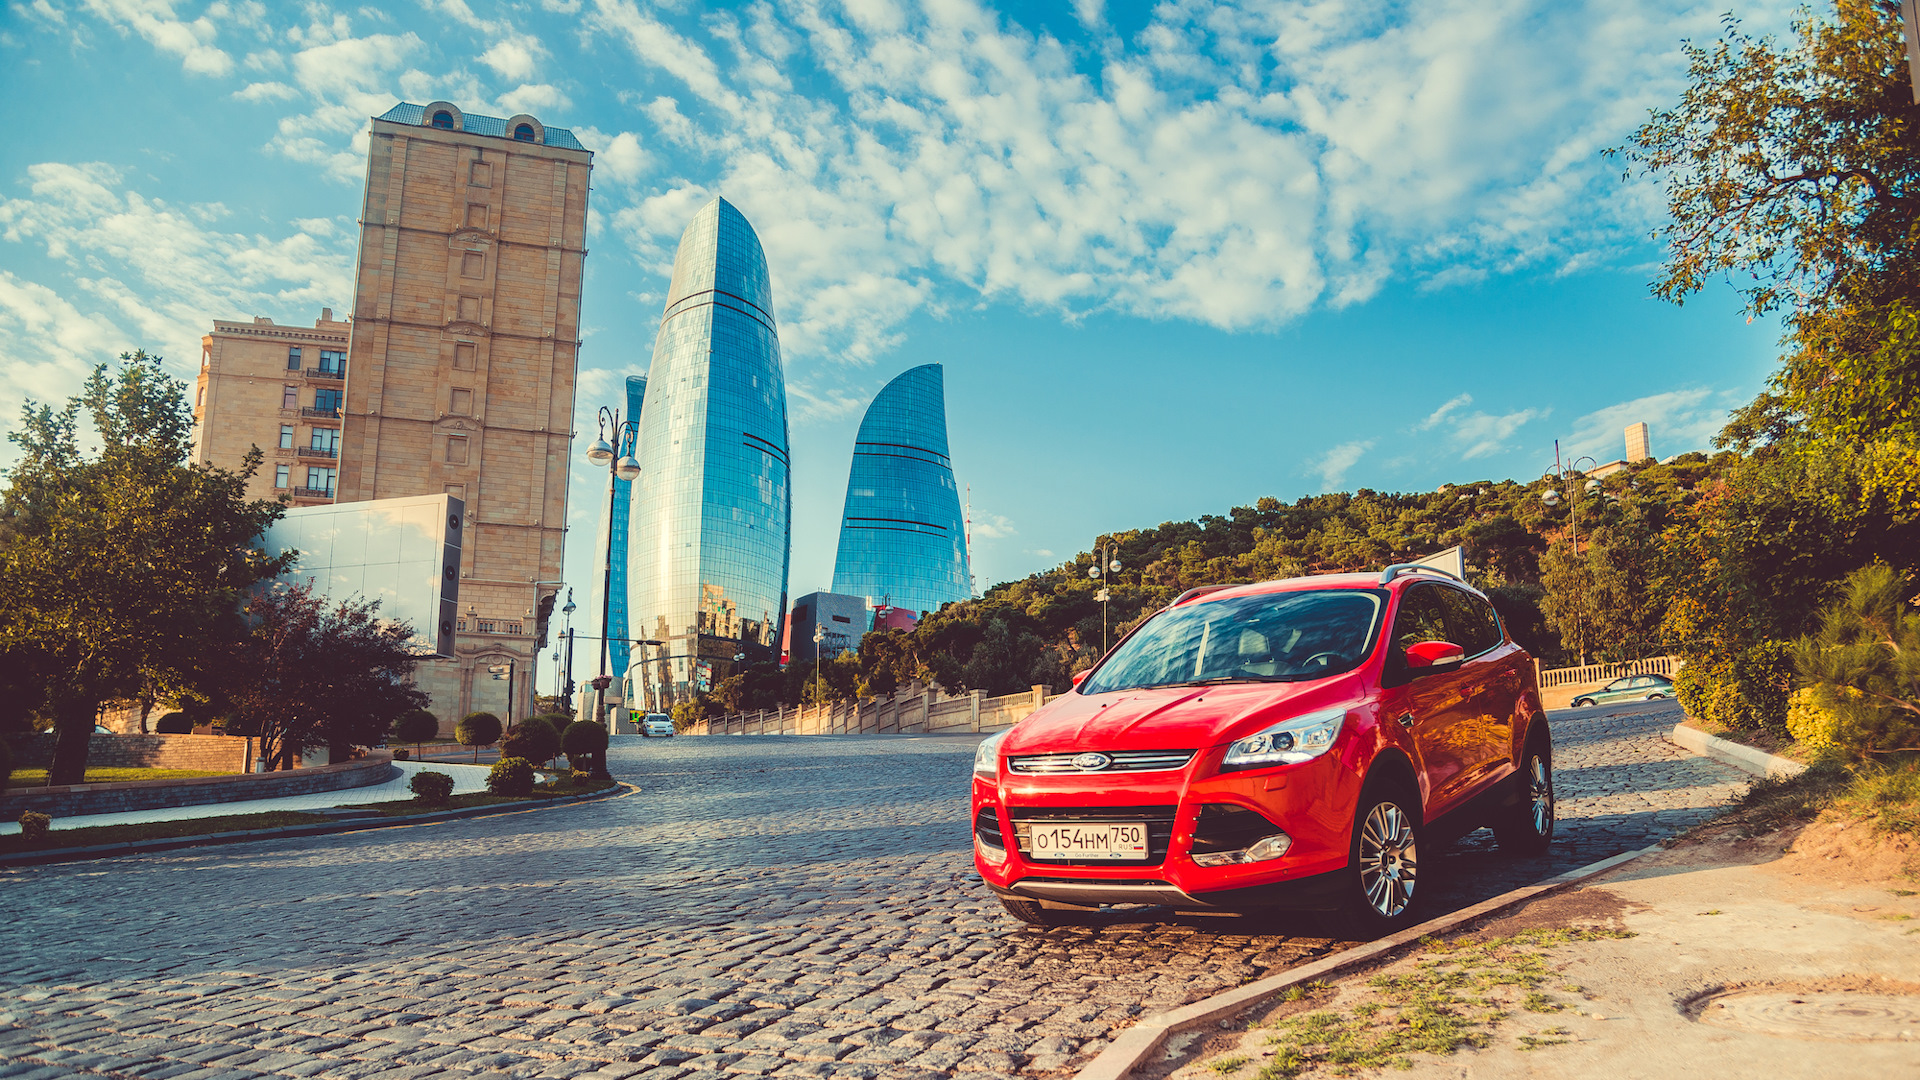 Аренда авто в Баку   выгодно и практично